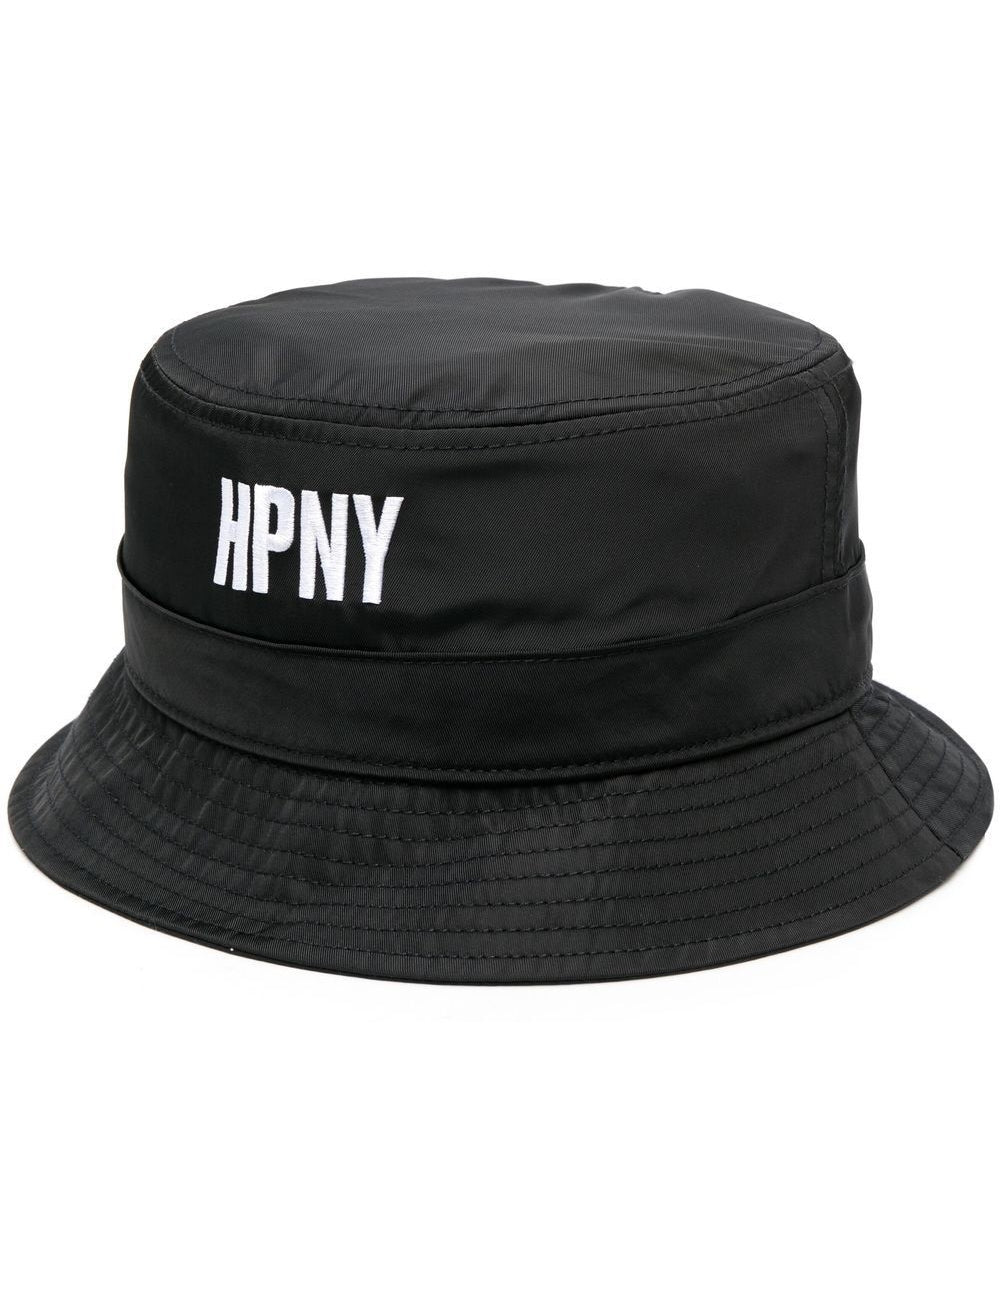 hpny-emb-nylon-bucket-hat.jpg